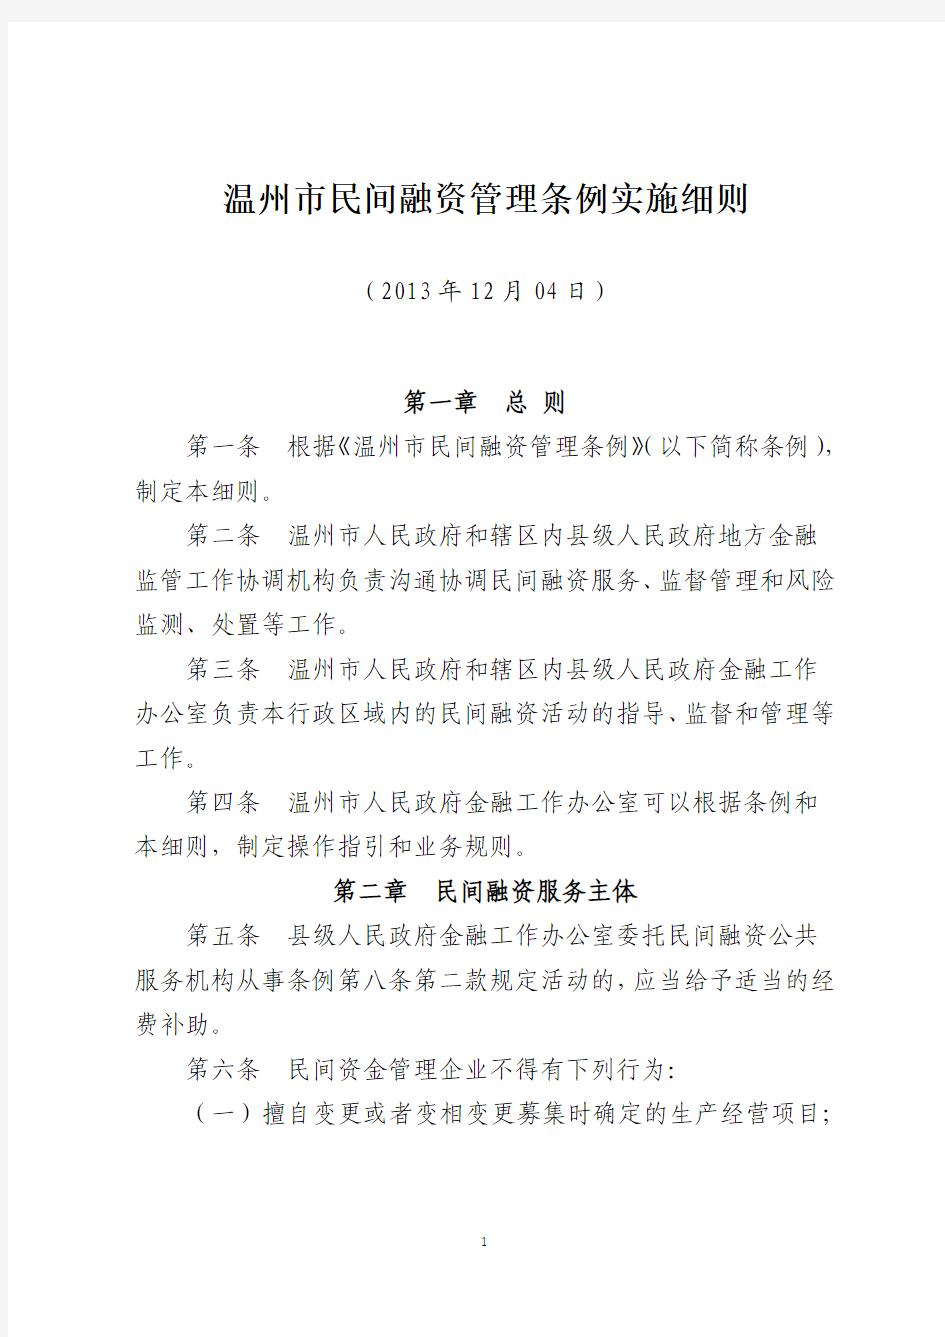 2014年03月01日-温州市民间融资管理条例实施细则